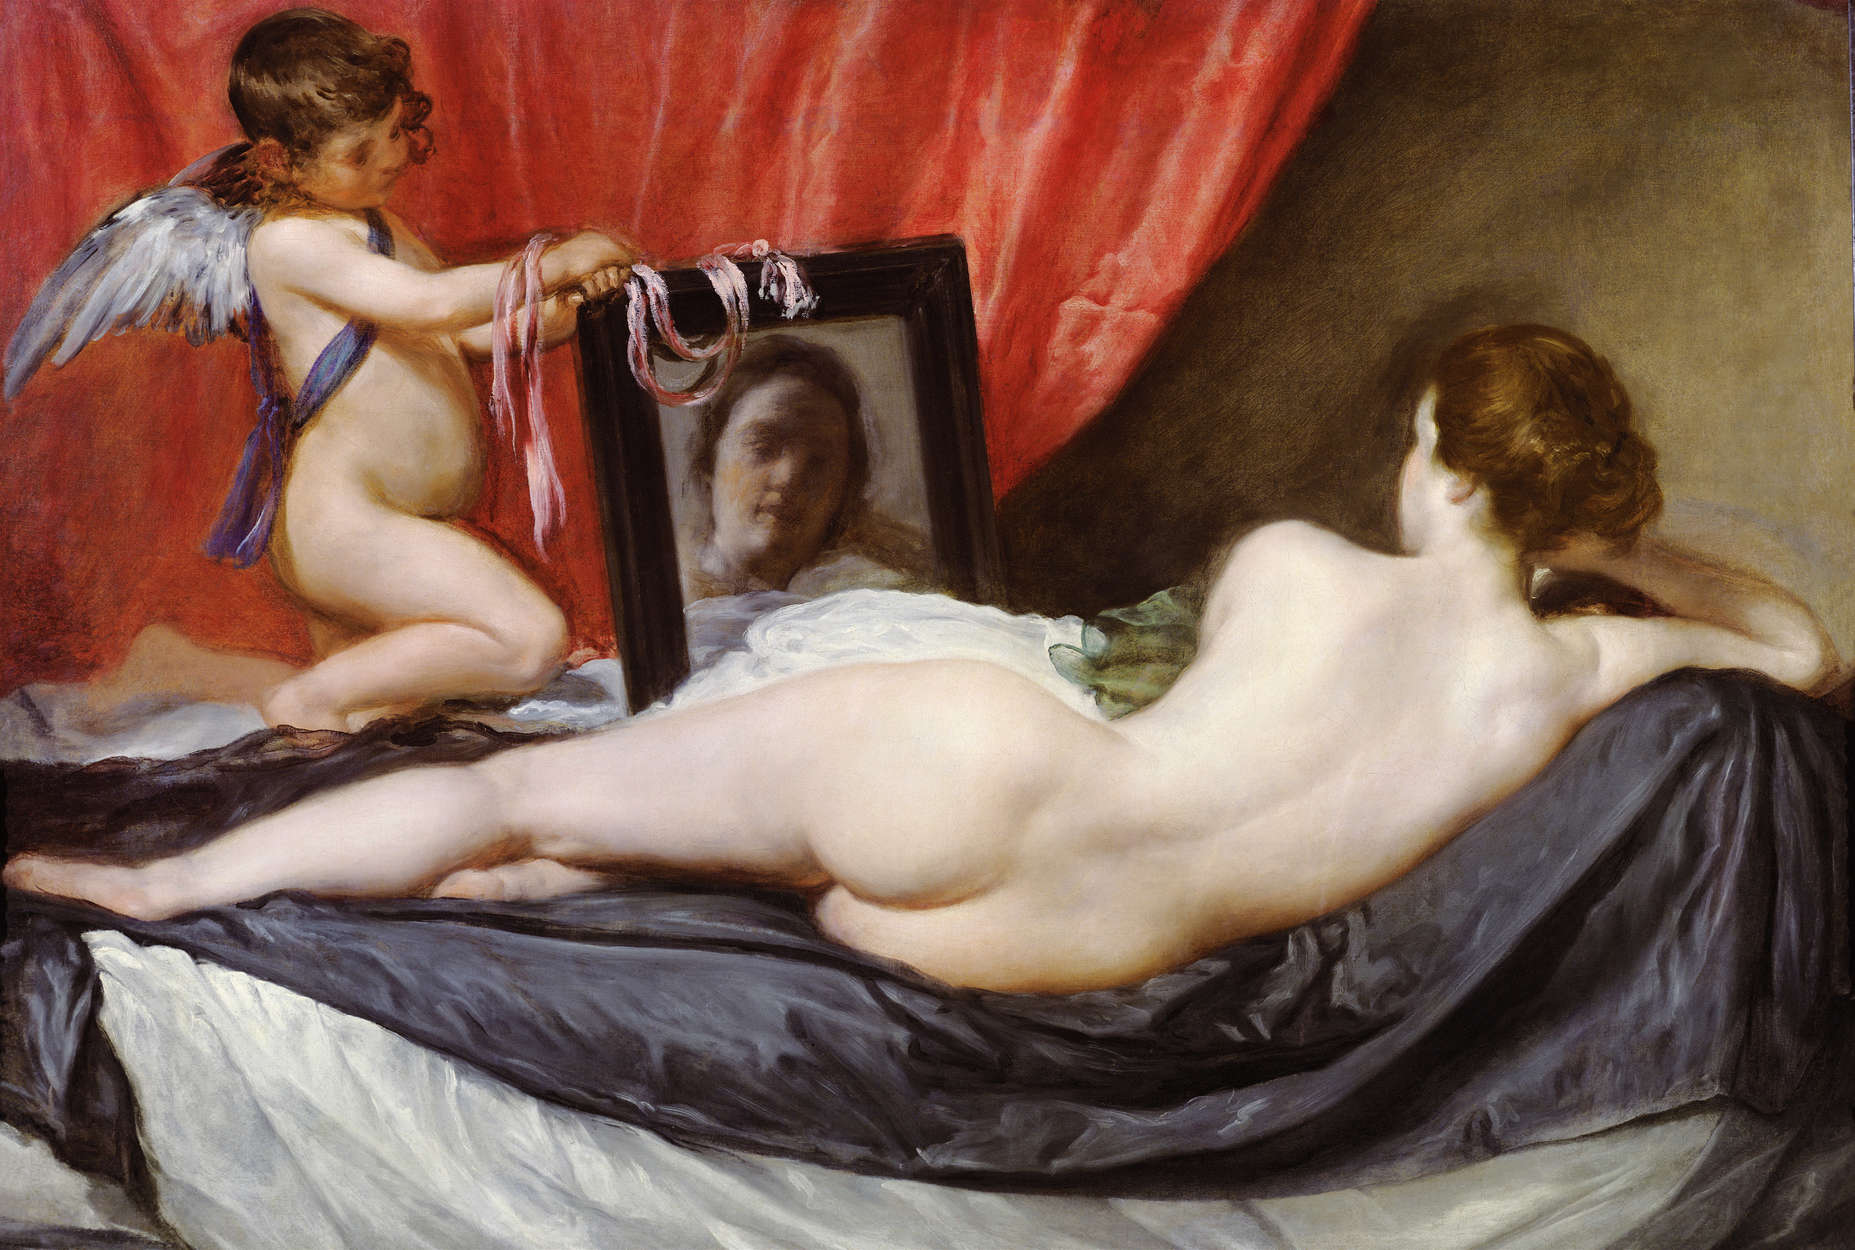             Papier peint "Vénus devant le miroir" de Diego Velazquez
        